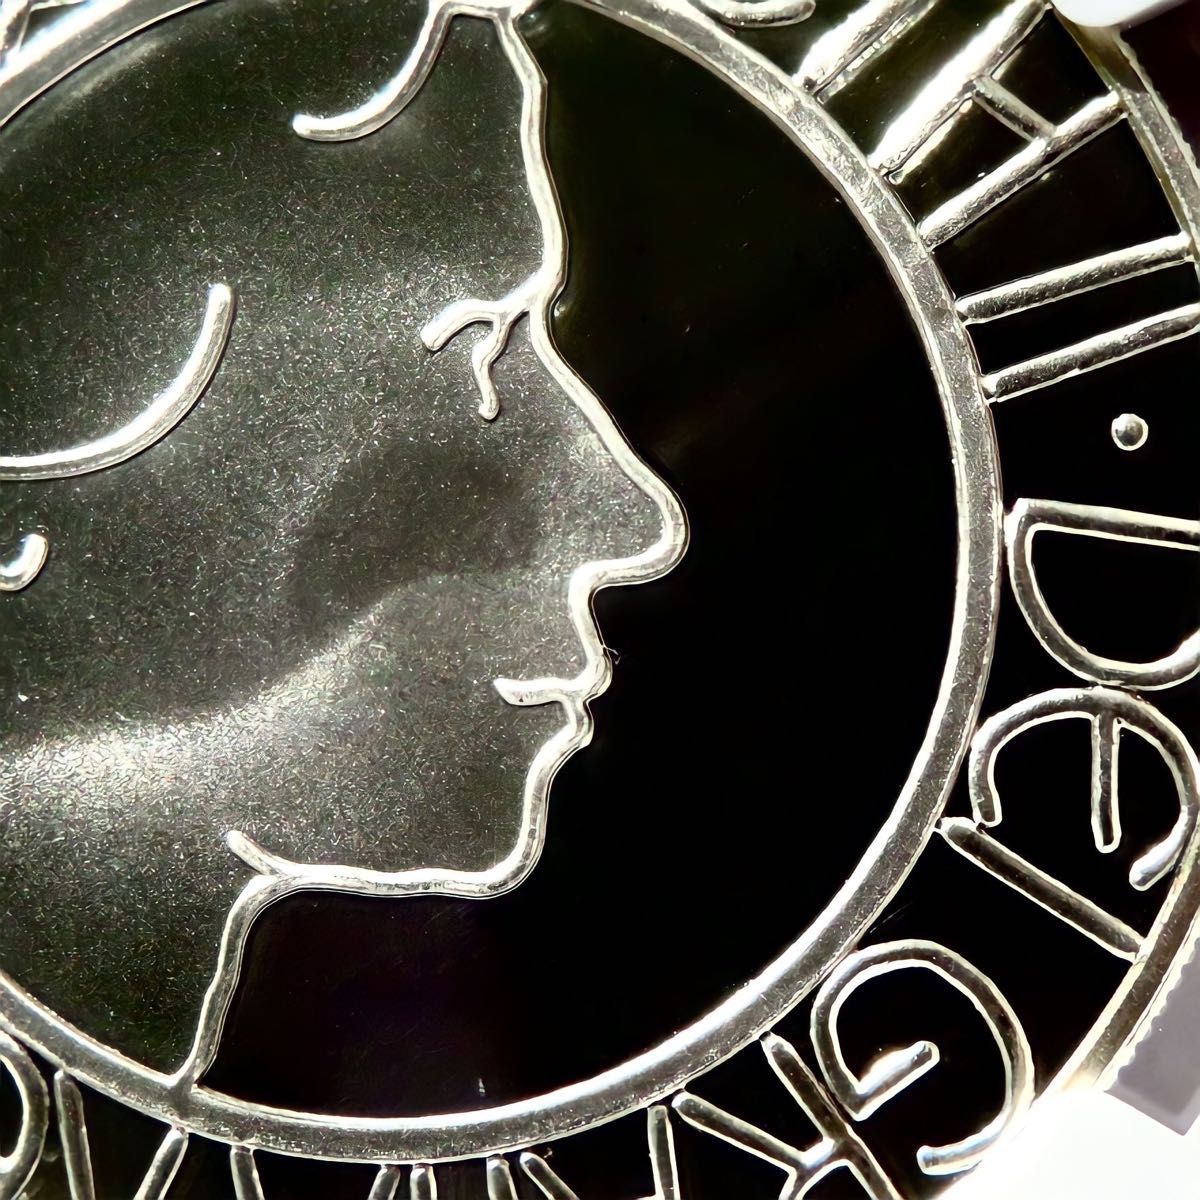 2003年ゴールデンジュビリー 即位50周年記念 NGC PF70UC 5ポンド銀貨 